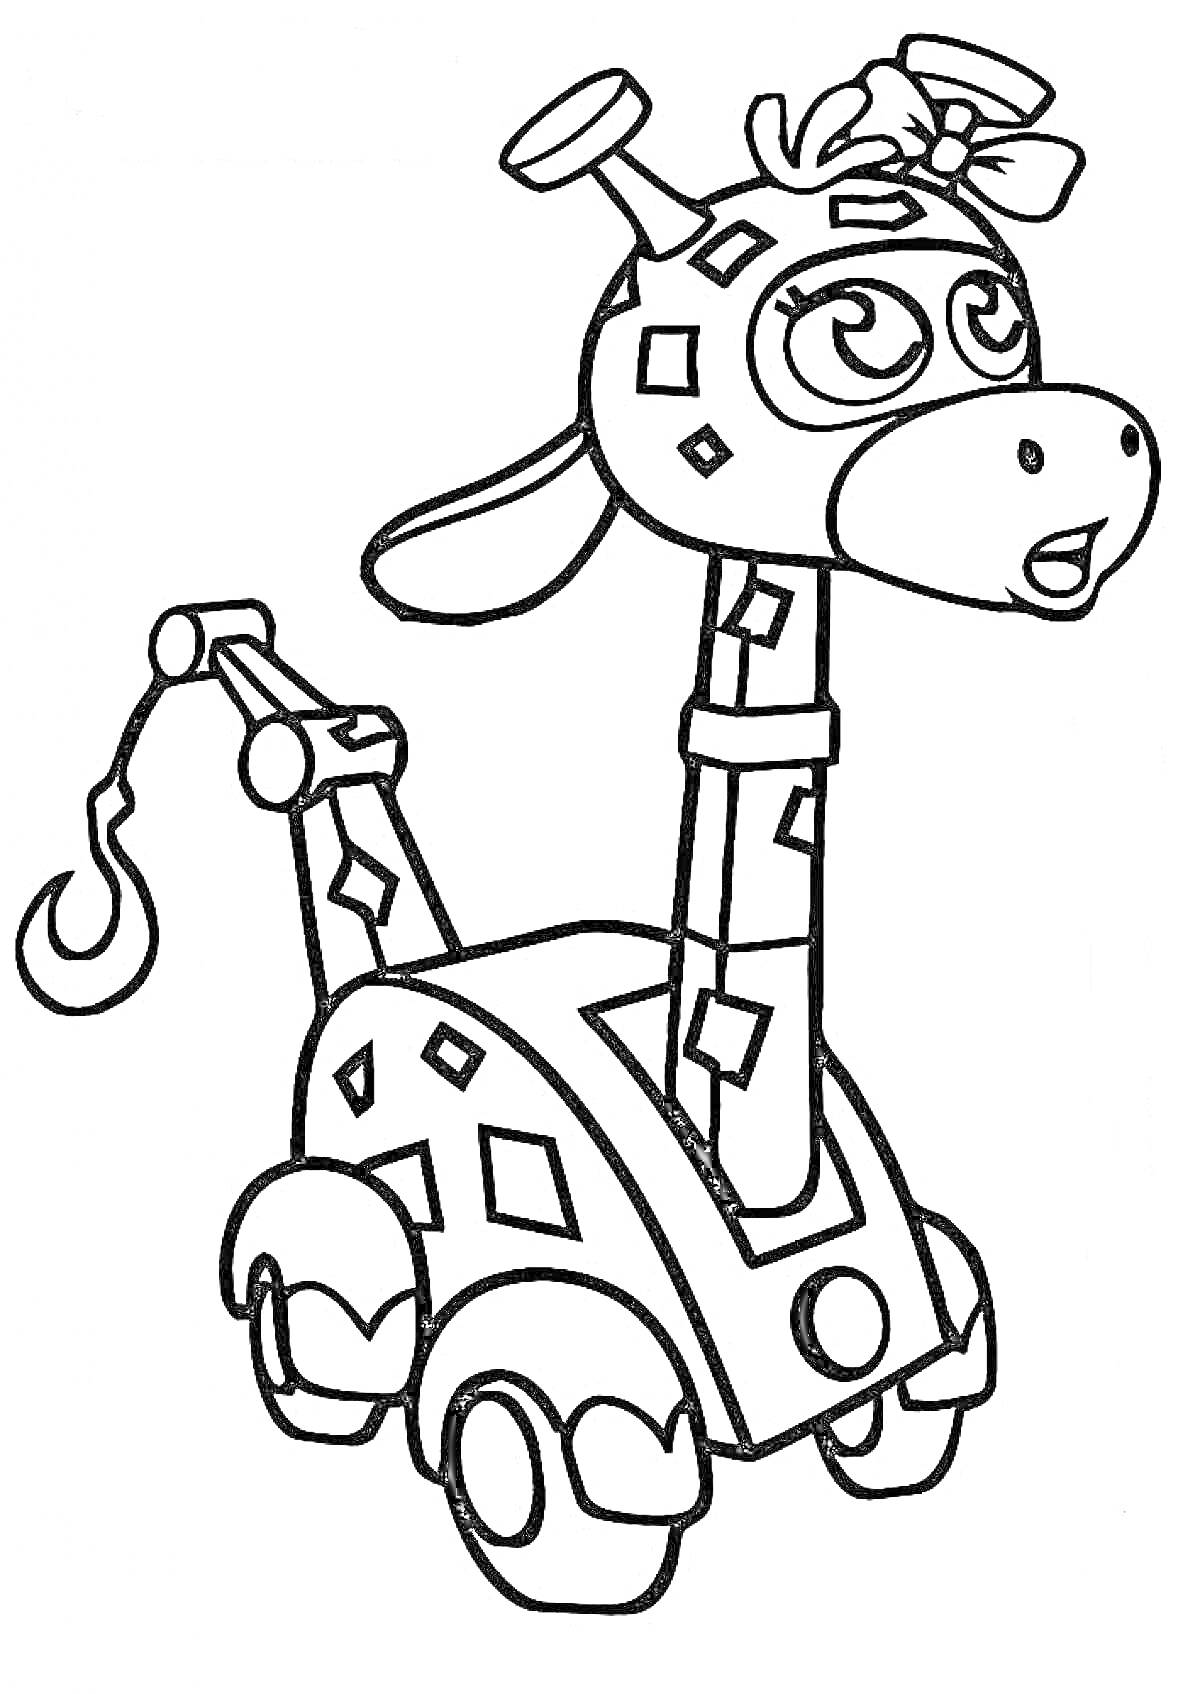 Раскраска Жираф-машина с бантом на голове из мультфильма Врумиз